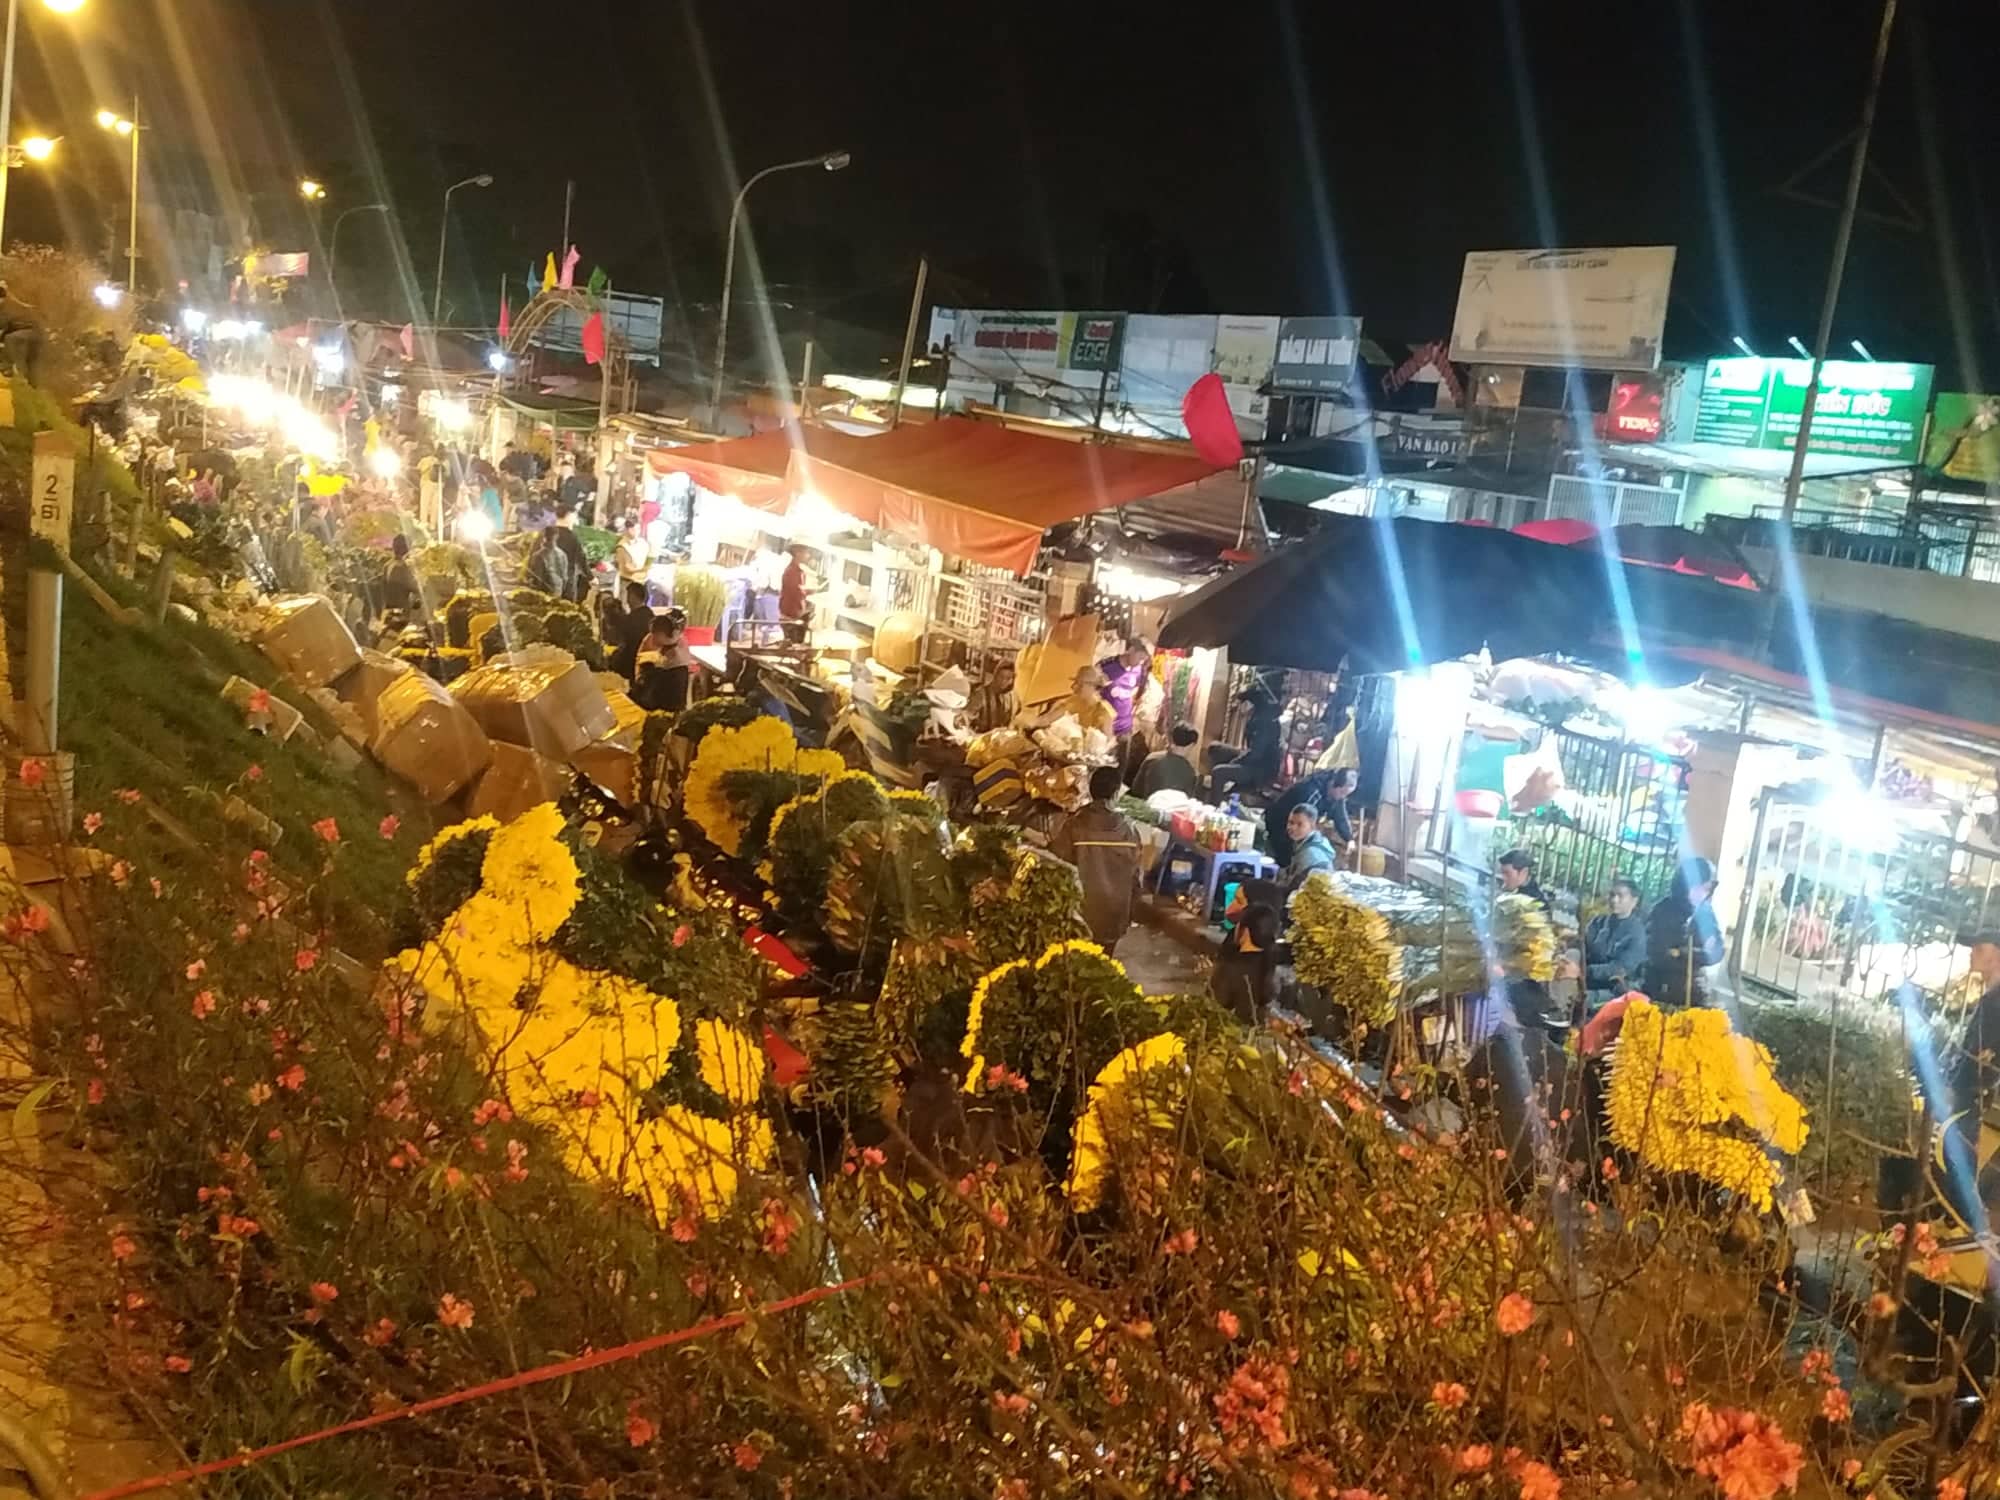 Vào thời điểm đêm tối, đường Quảng Bá trở nên lung linh tuyệt đẹp như trong tranh. Bức ảnh sẽ cho bạn thấy được sự hiền hòa và thanh tịnh của khu phố nơi những hàng hoa yên bình đang nghỉ ngơi.